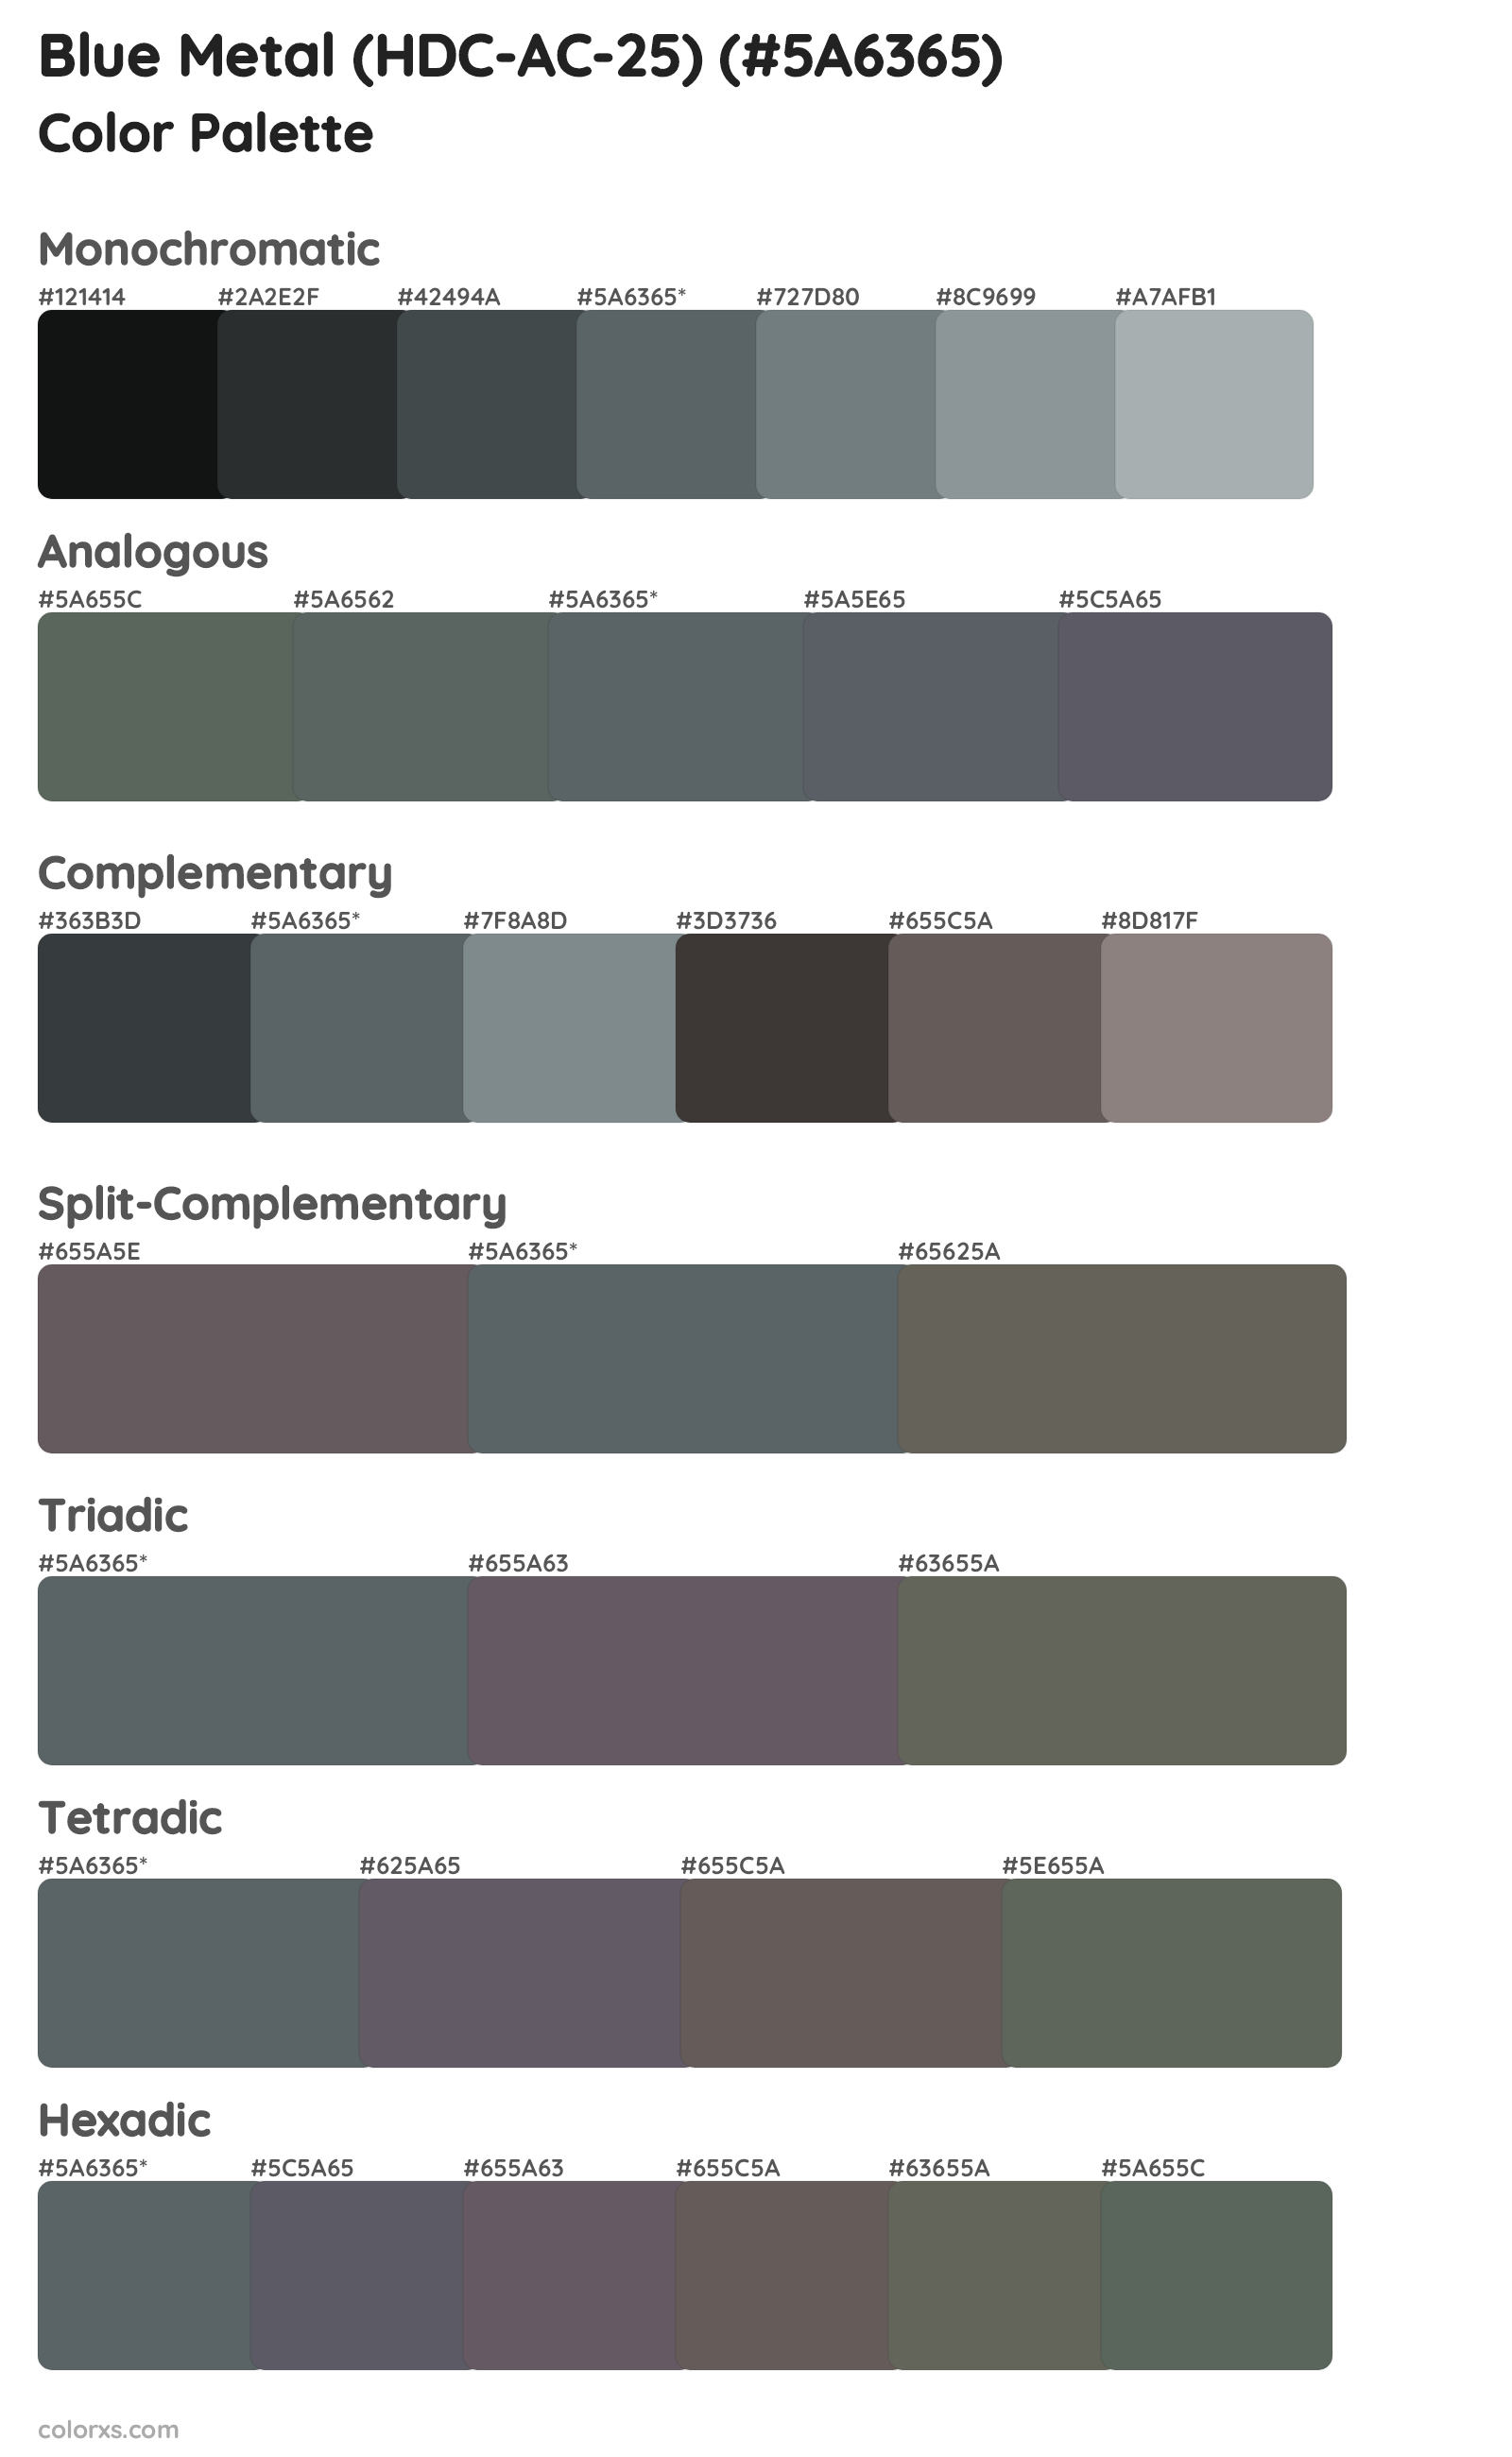 Blue Metal (HDC-AC-25) Color Scheme Palettes